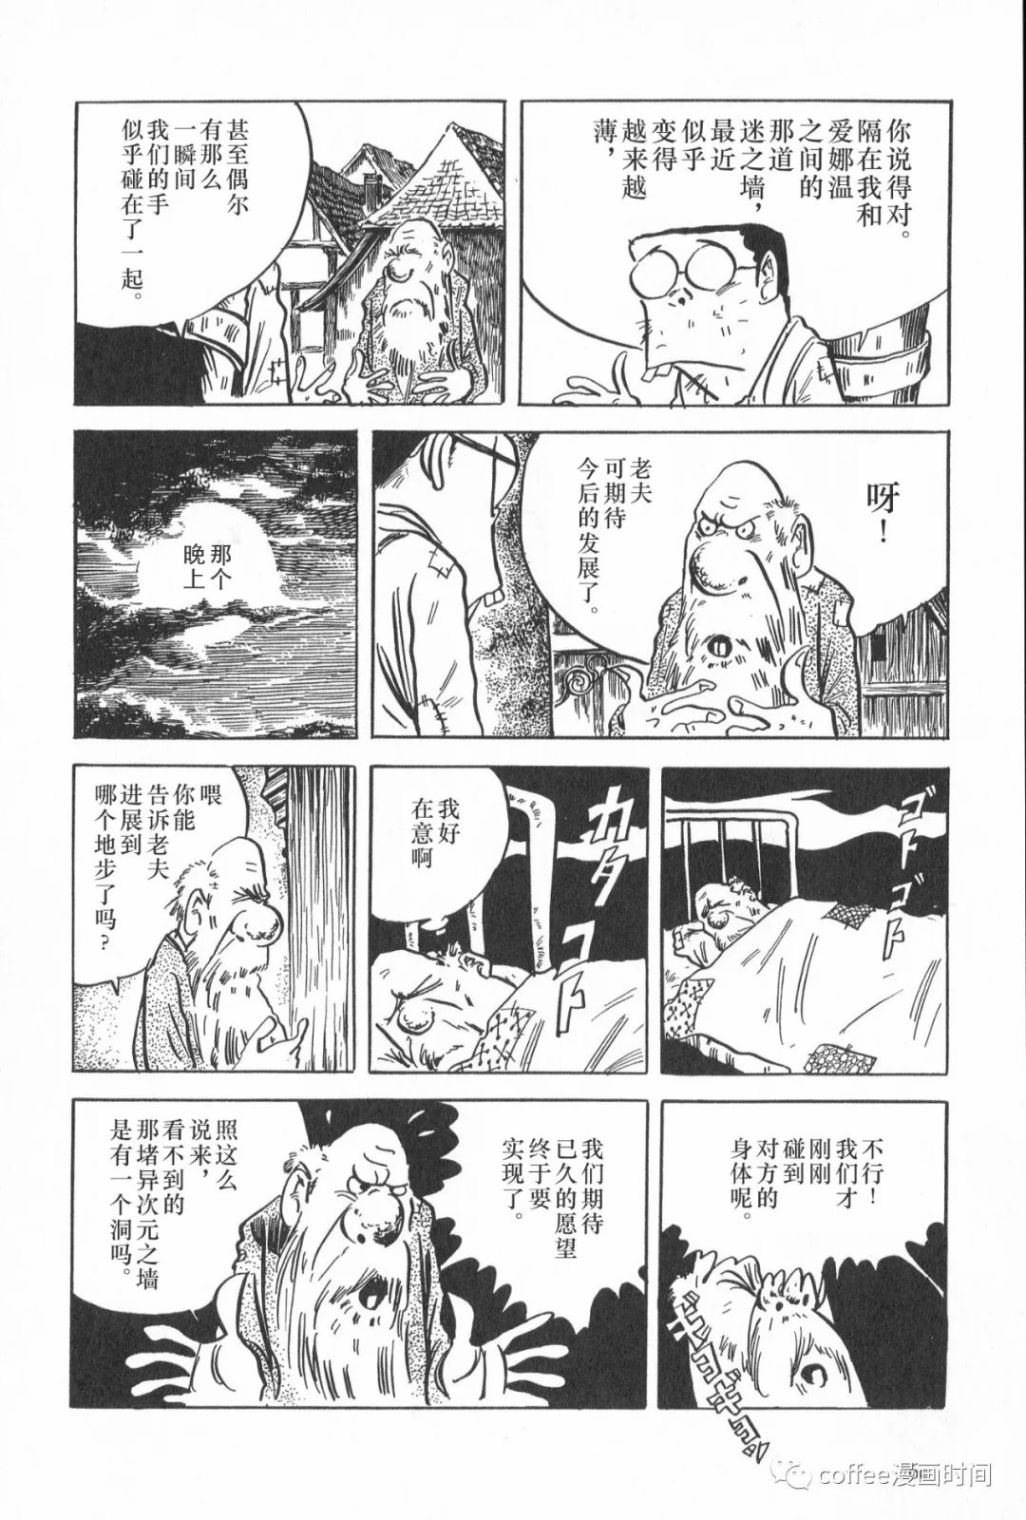 日本短篇漫畫傑作集 - 水木茂《妖花愛娜溫》 - 2